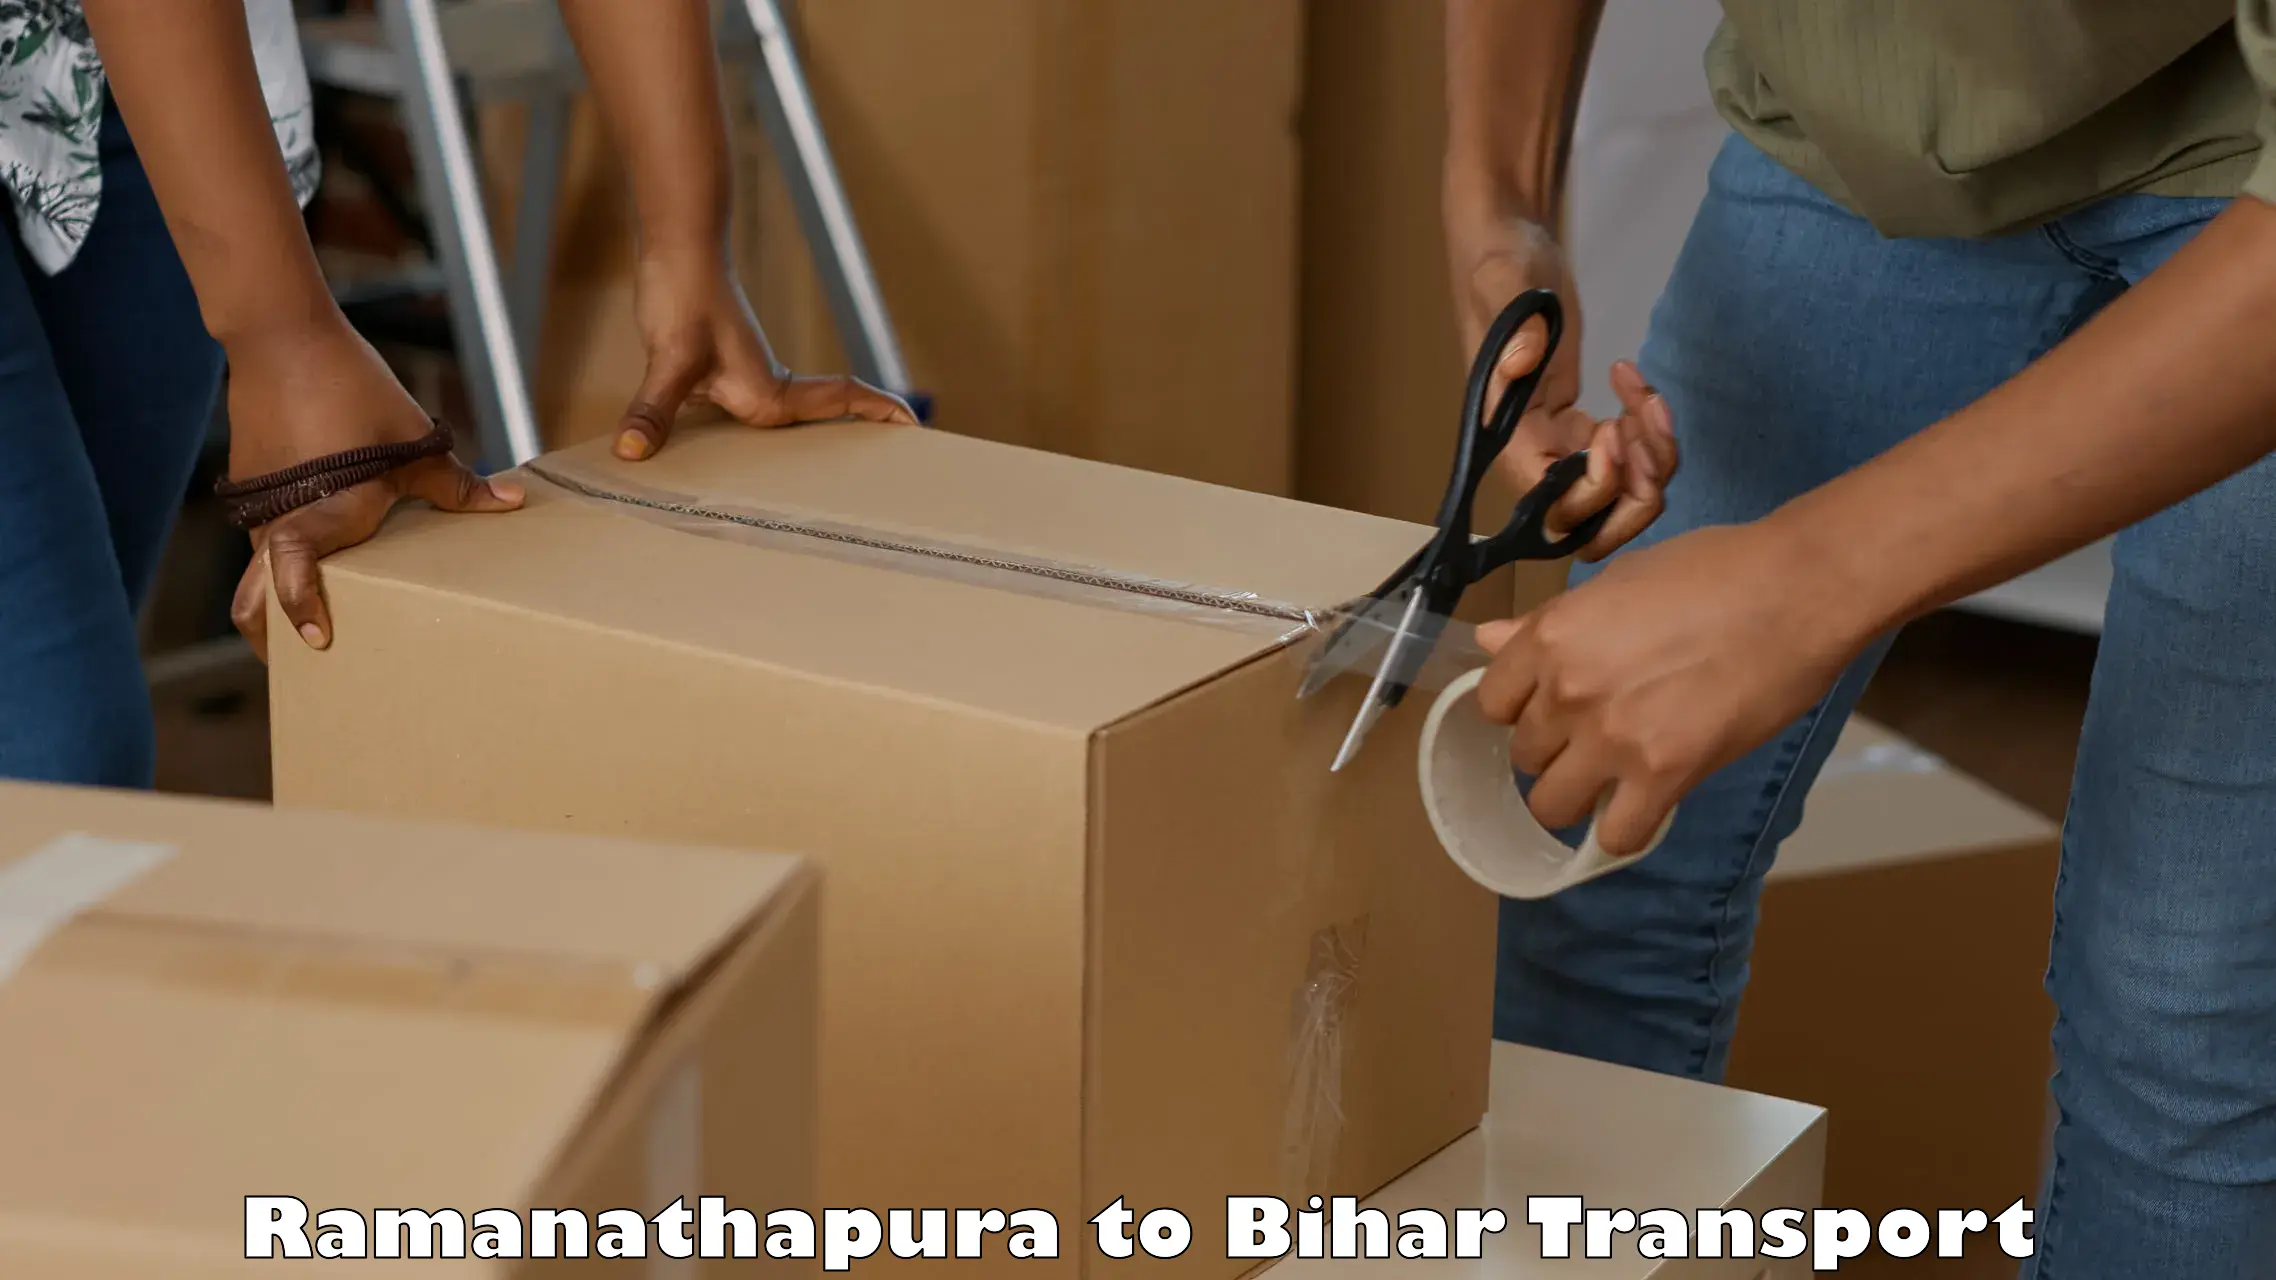 Cargo train transport services Ramanathapura to Jehanabad